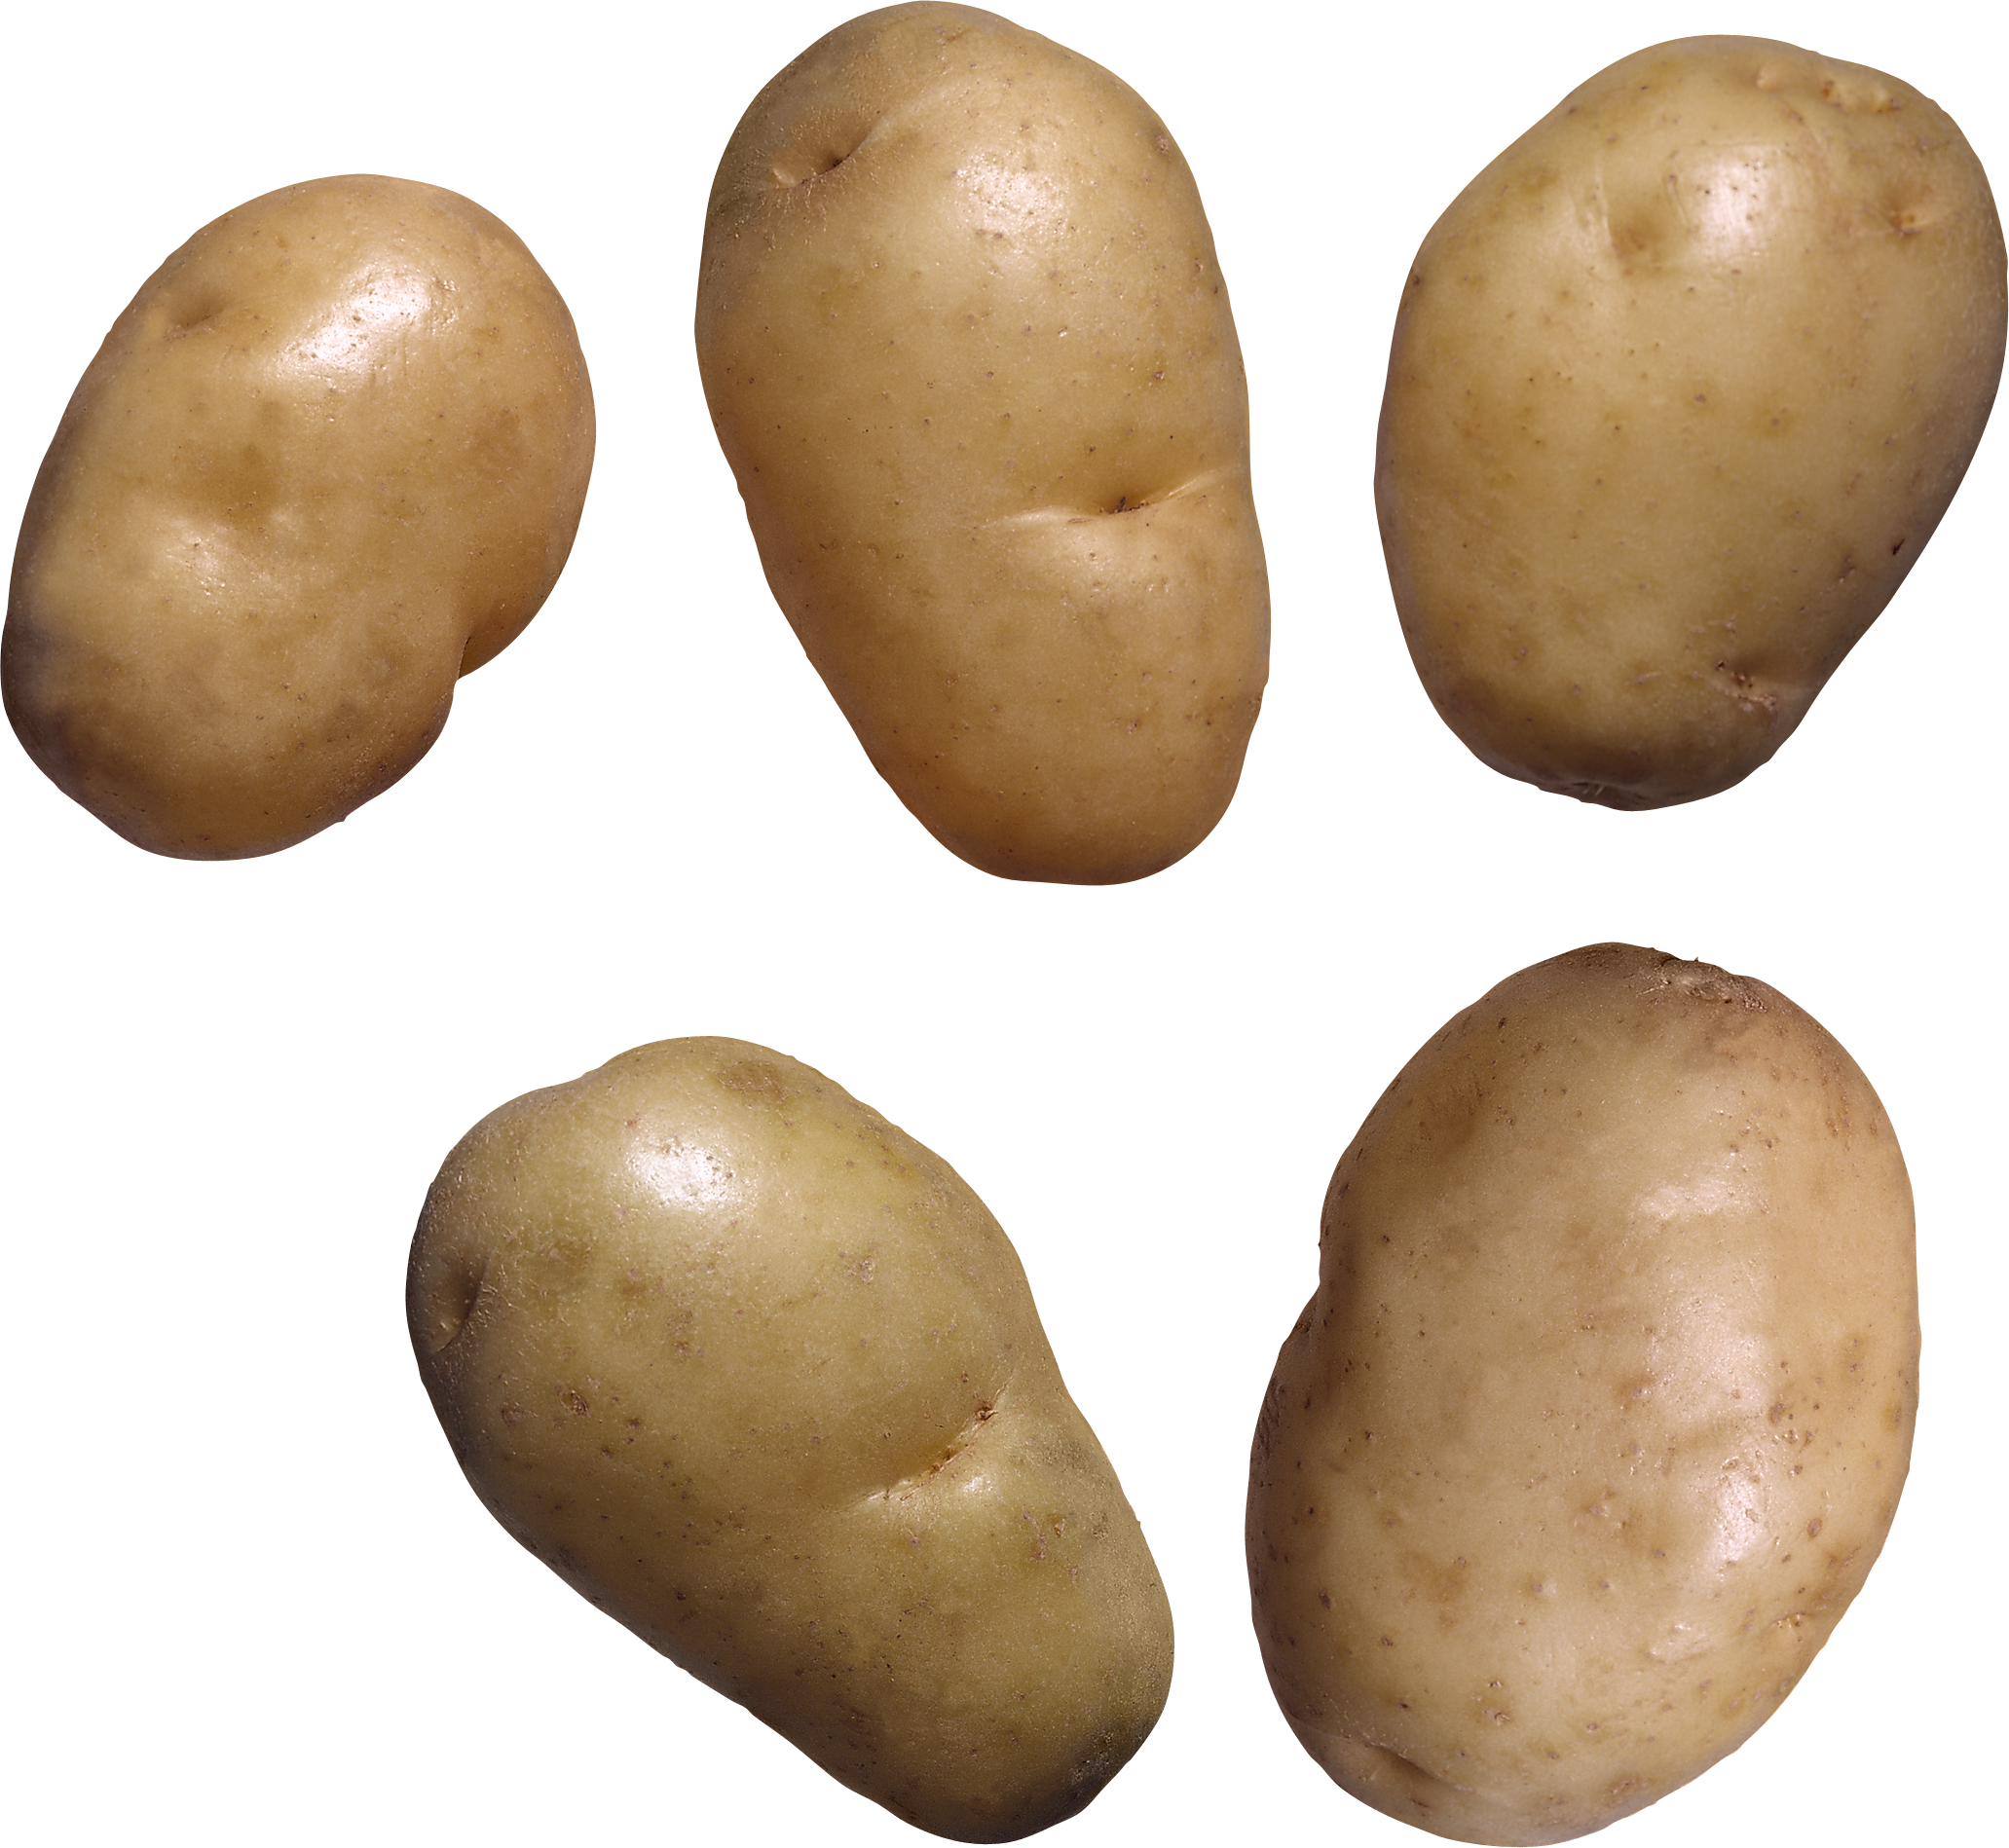 Ziemniak